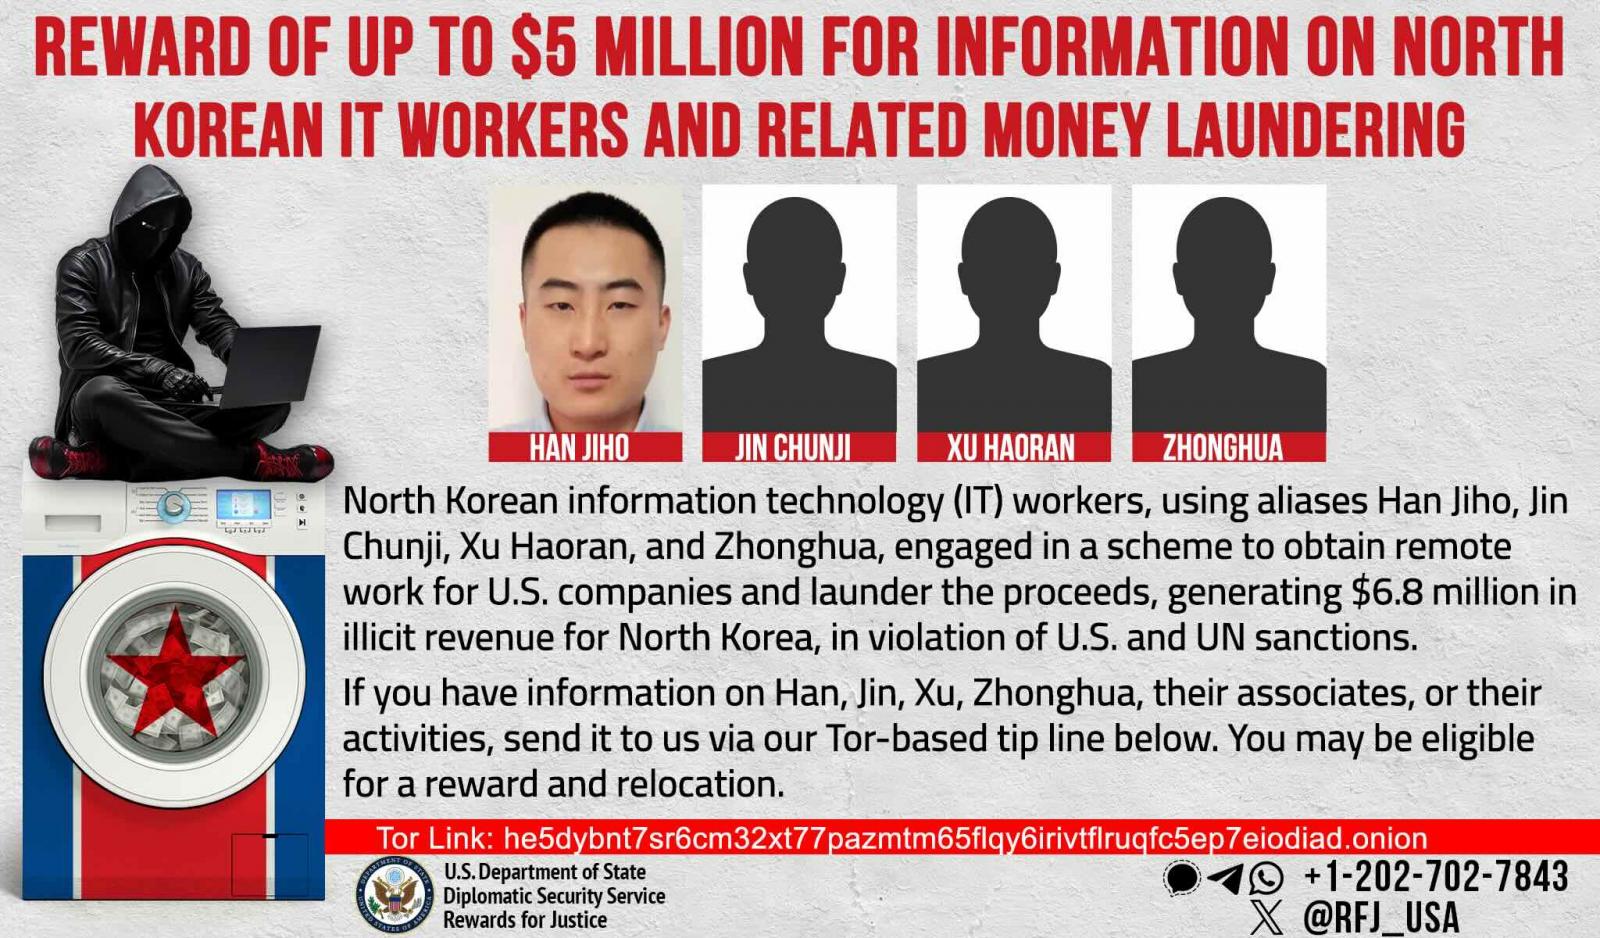 Kuzey Koreli BT çalışanları hakkında bilgi verene ödül